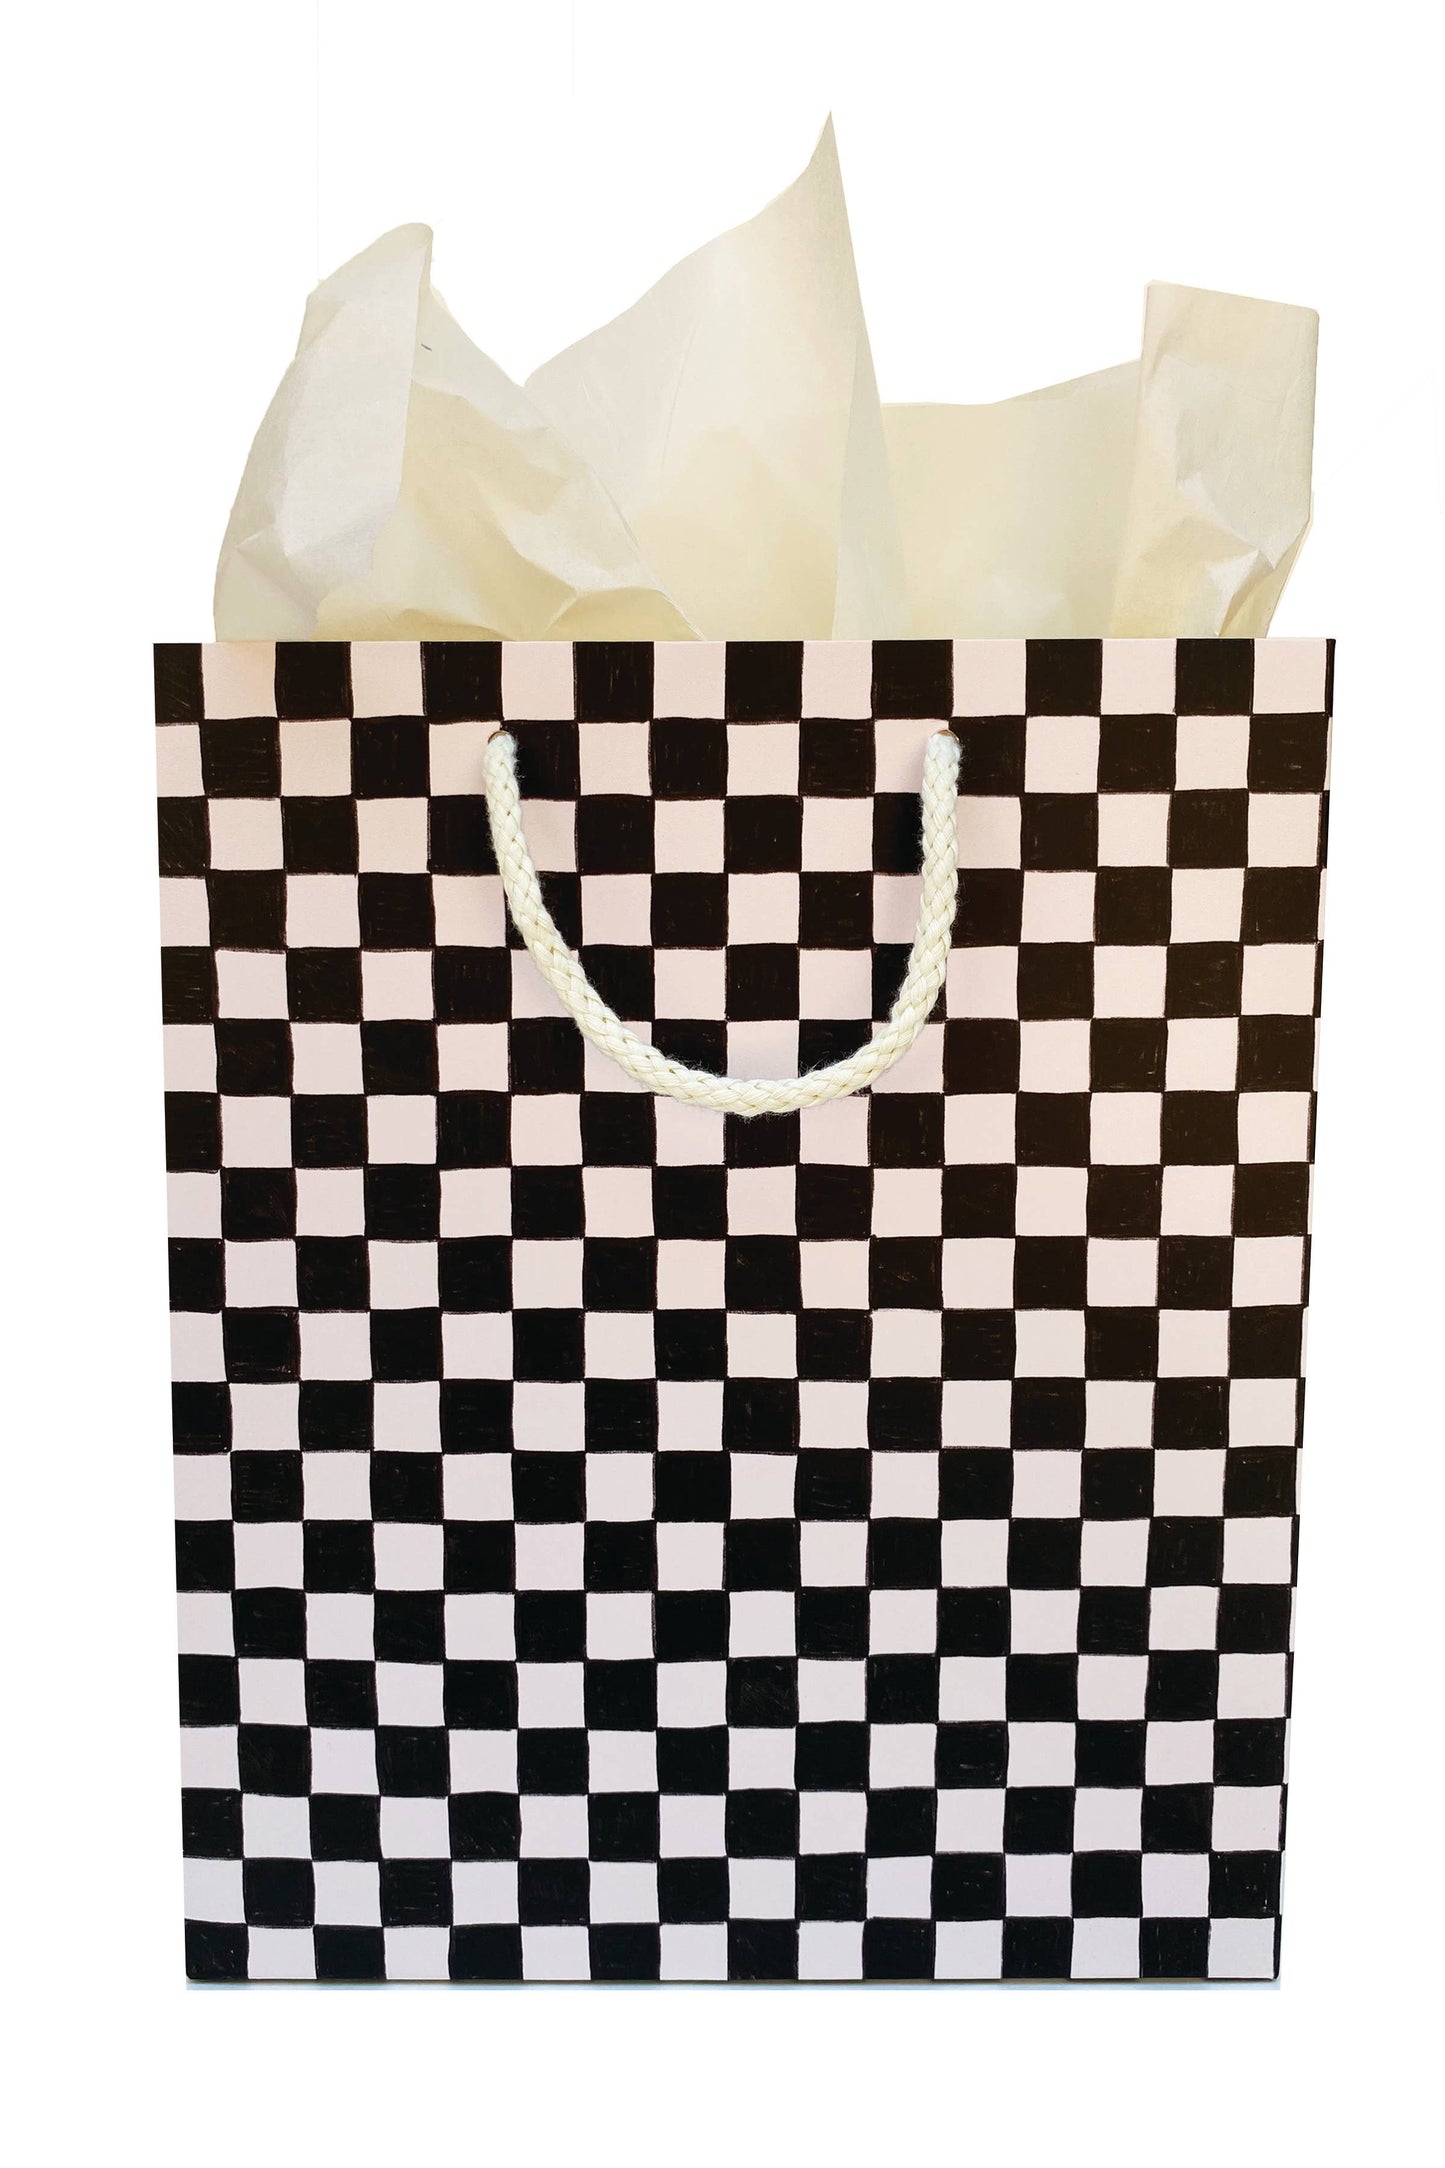 Black Checkers Gift Bag